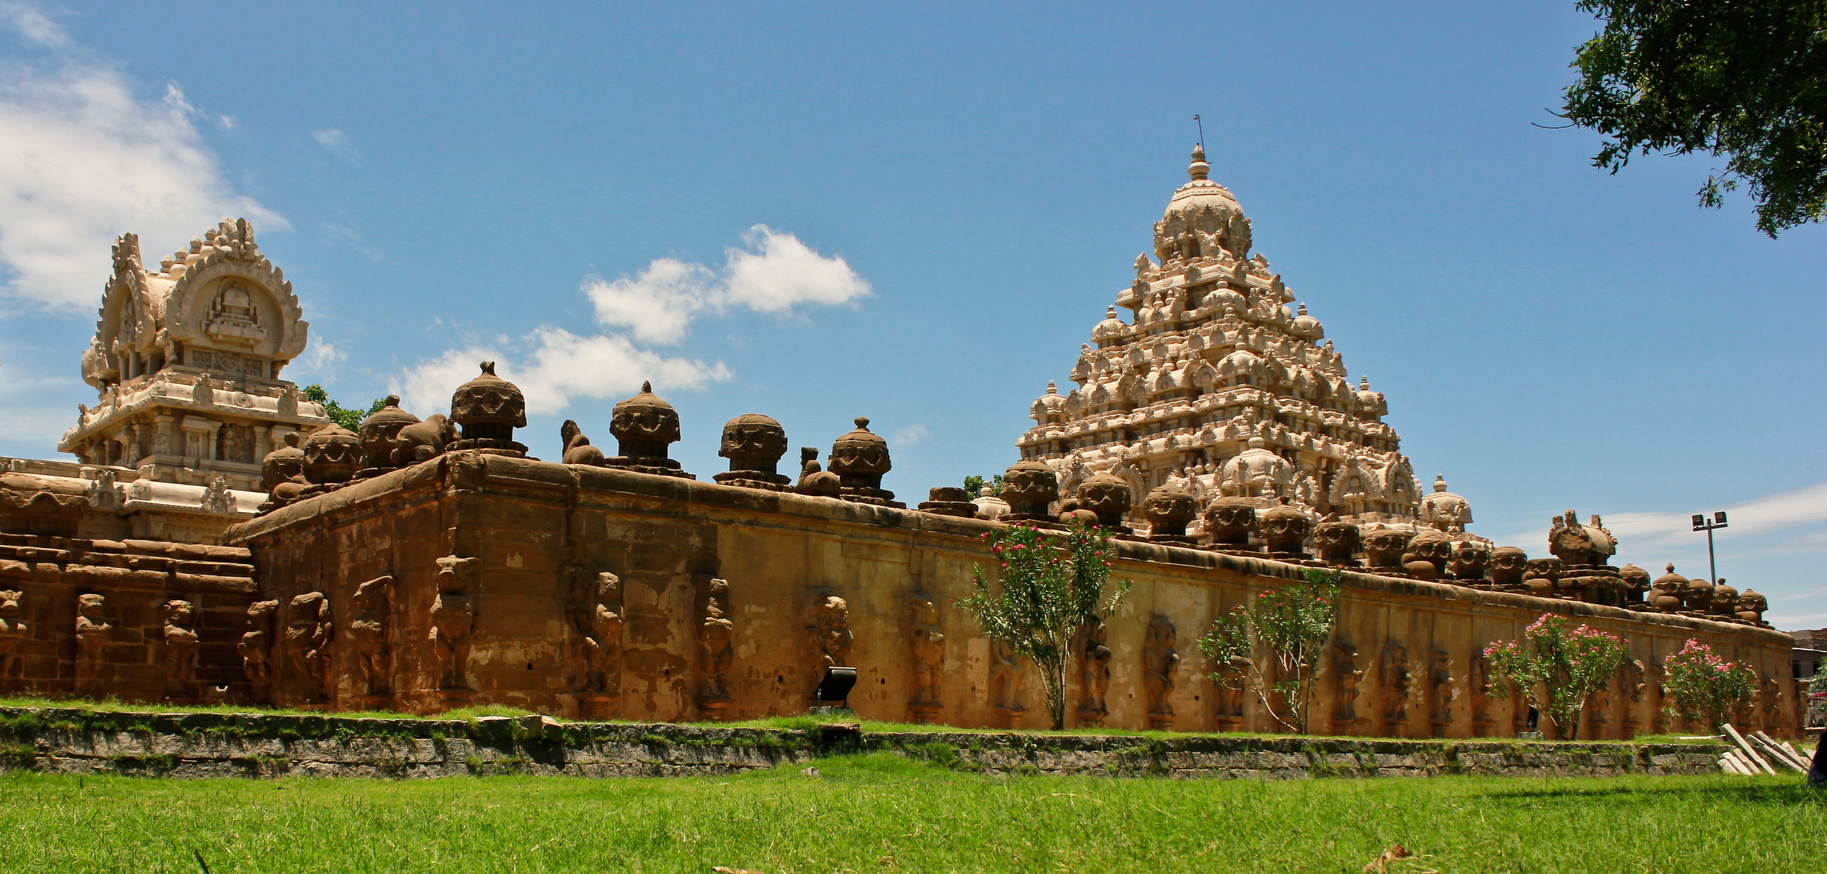 கைலாசநாதர் கோயில், காஞ்சிபுரம் 